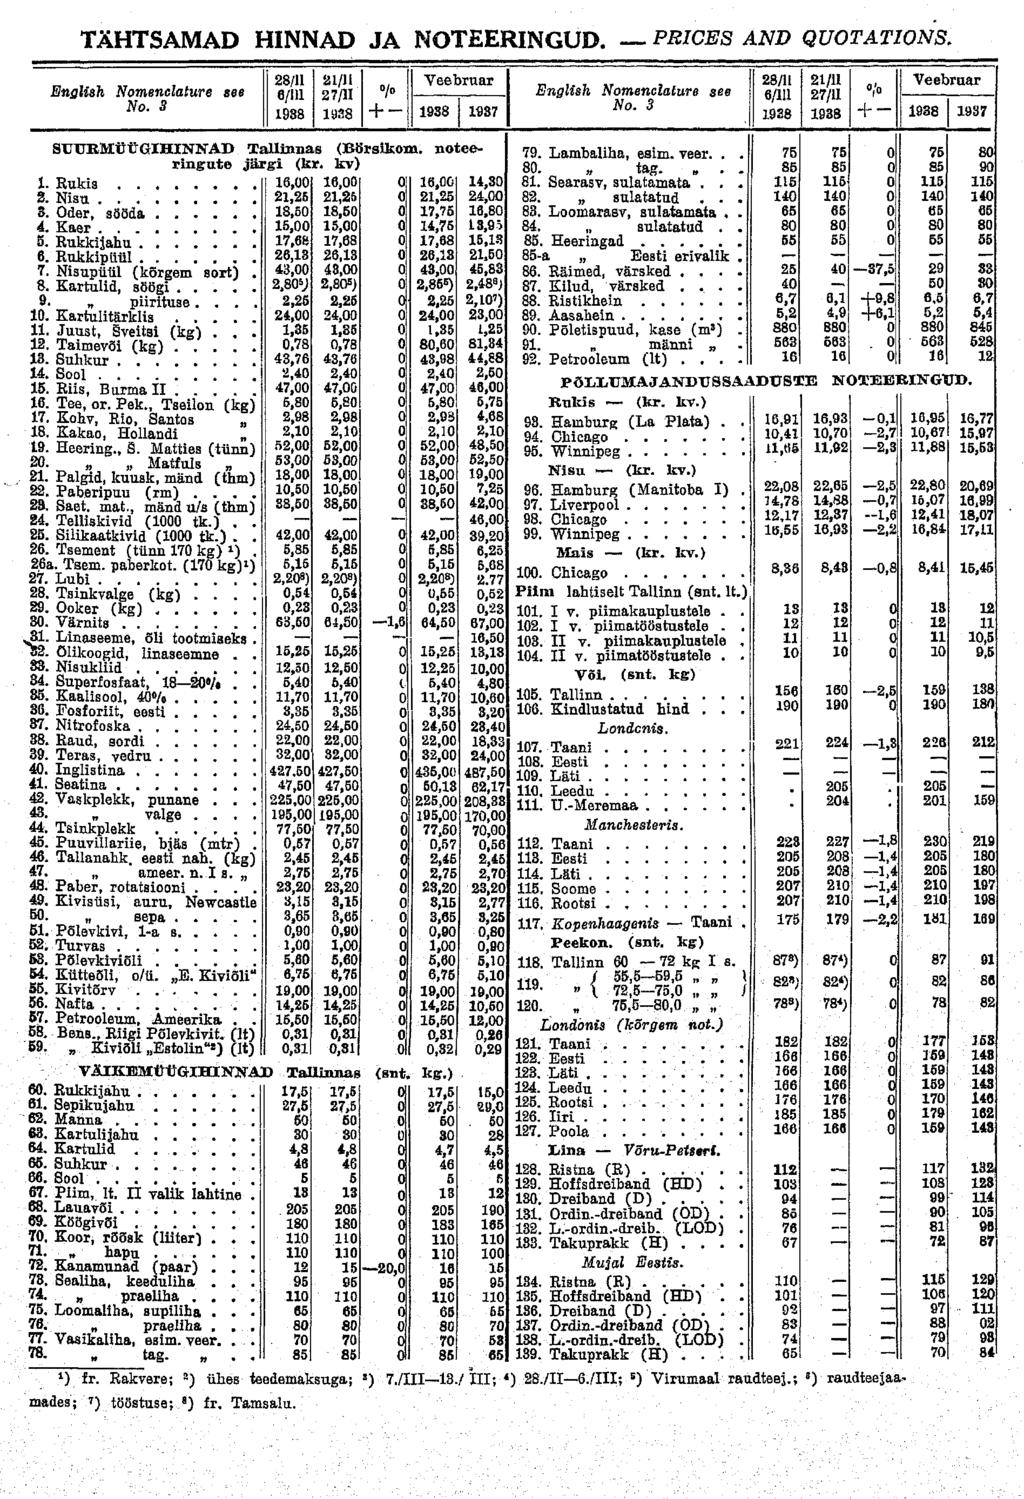 TÄHTSAMAD HINNAD JA NOTEERINGUD. PRICES AND QUOTATIONS. English Nomenclature see No. 3 28/11 6/111 1938 21/11 27/11 1938 /o + - Veebruar 1938 1937 SUTTRMÜÜGIHINNAB Tallinnas (Börsikom.